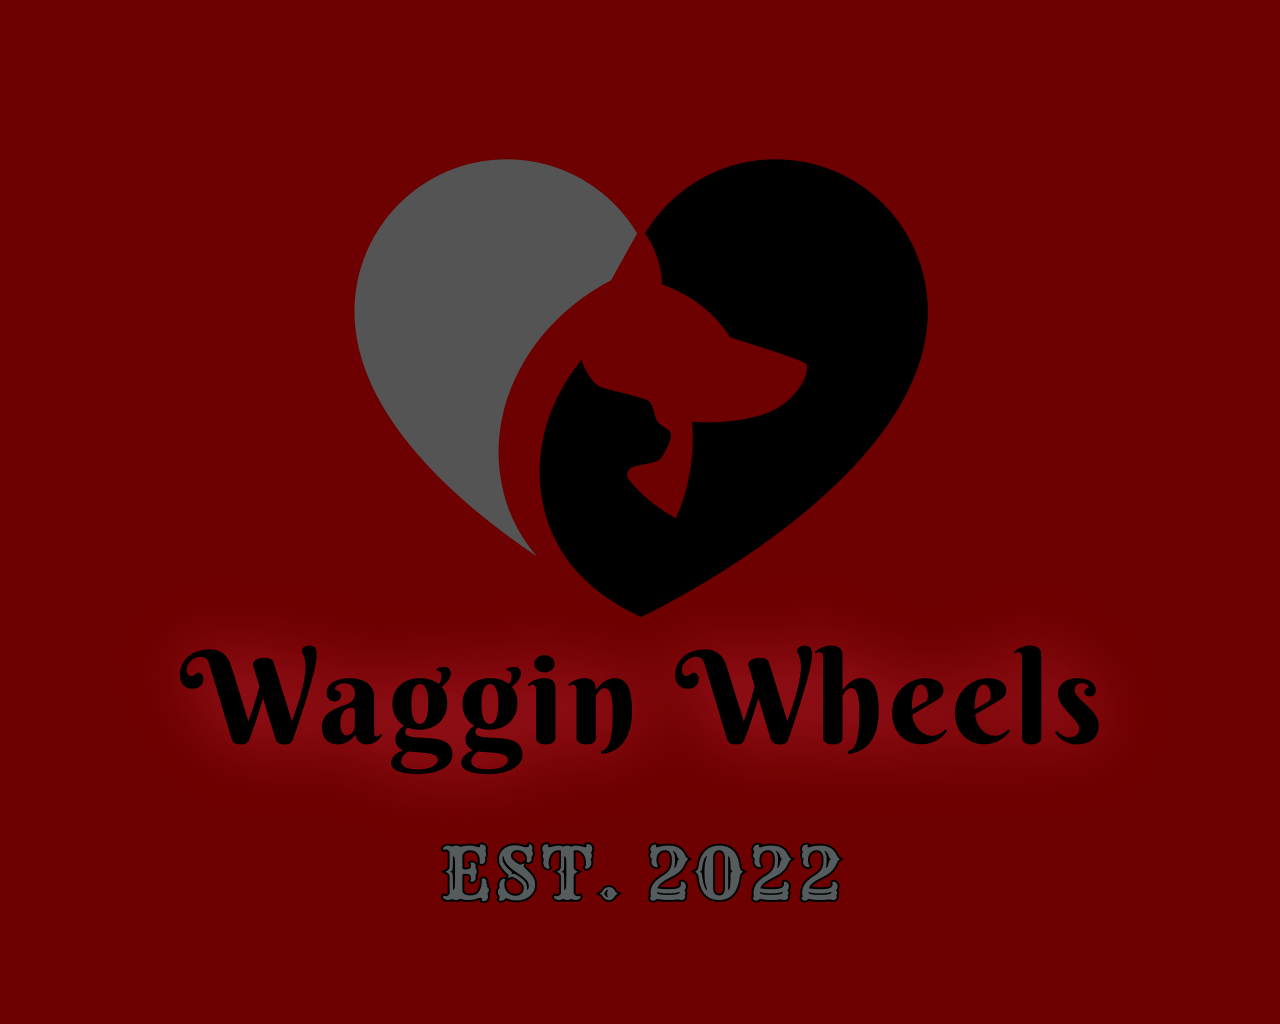 (c) Wagginwheels.net